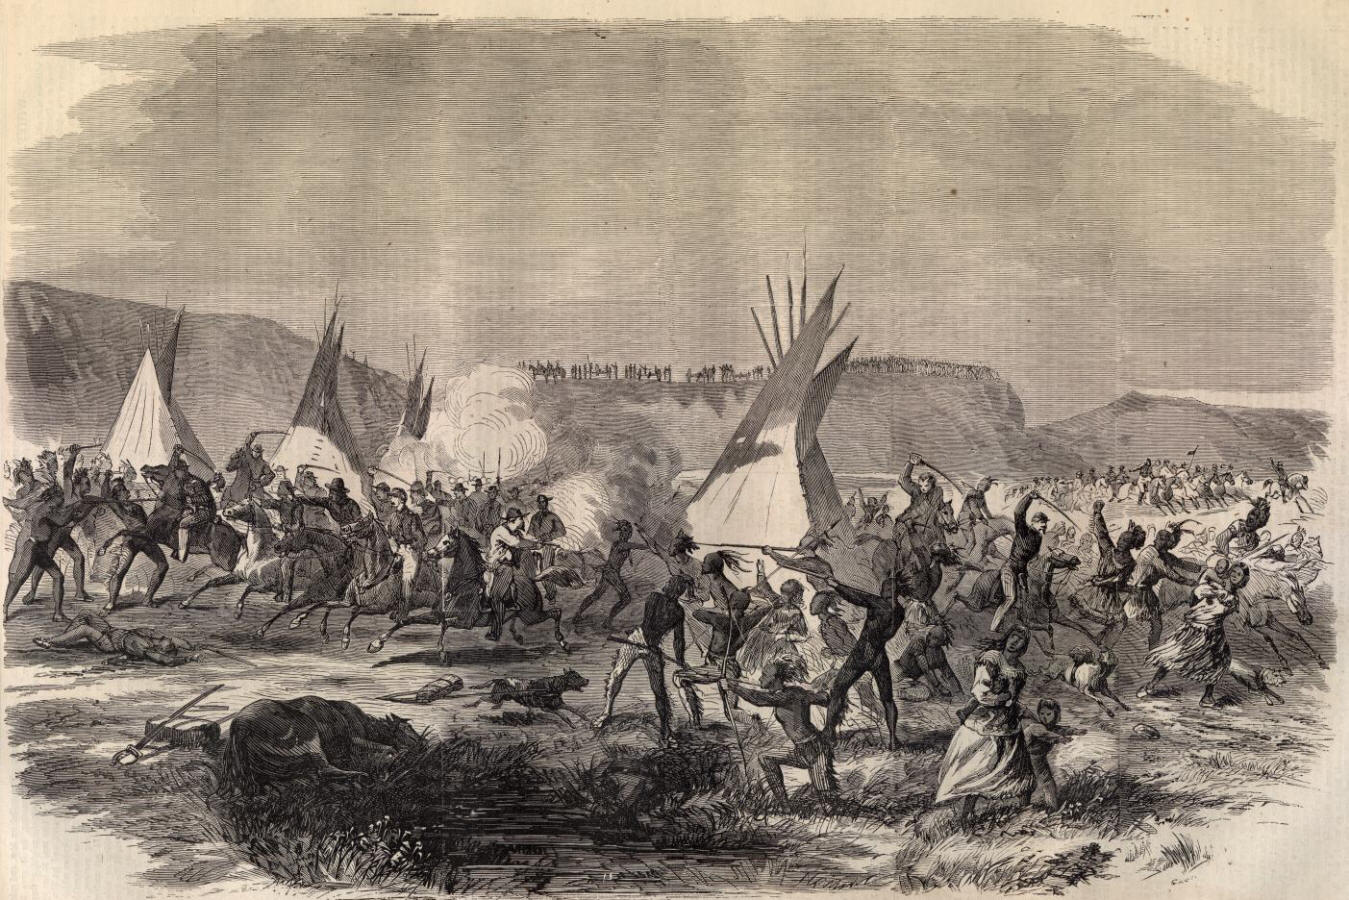 Sioux War